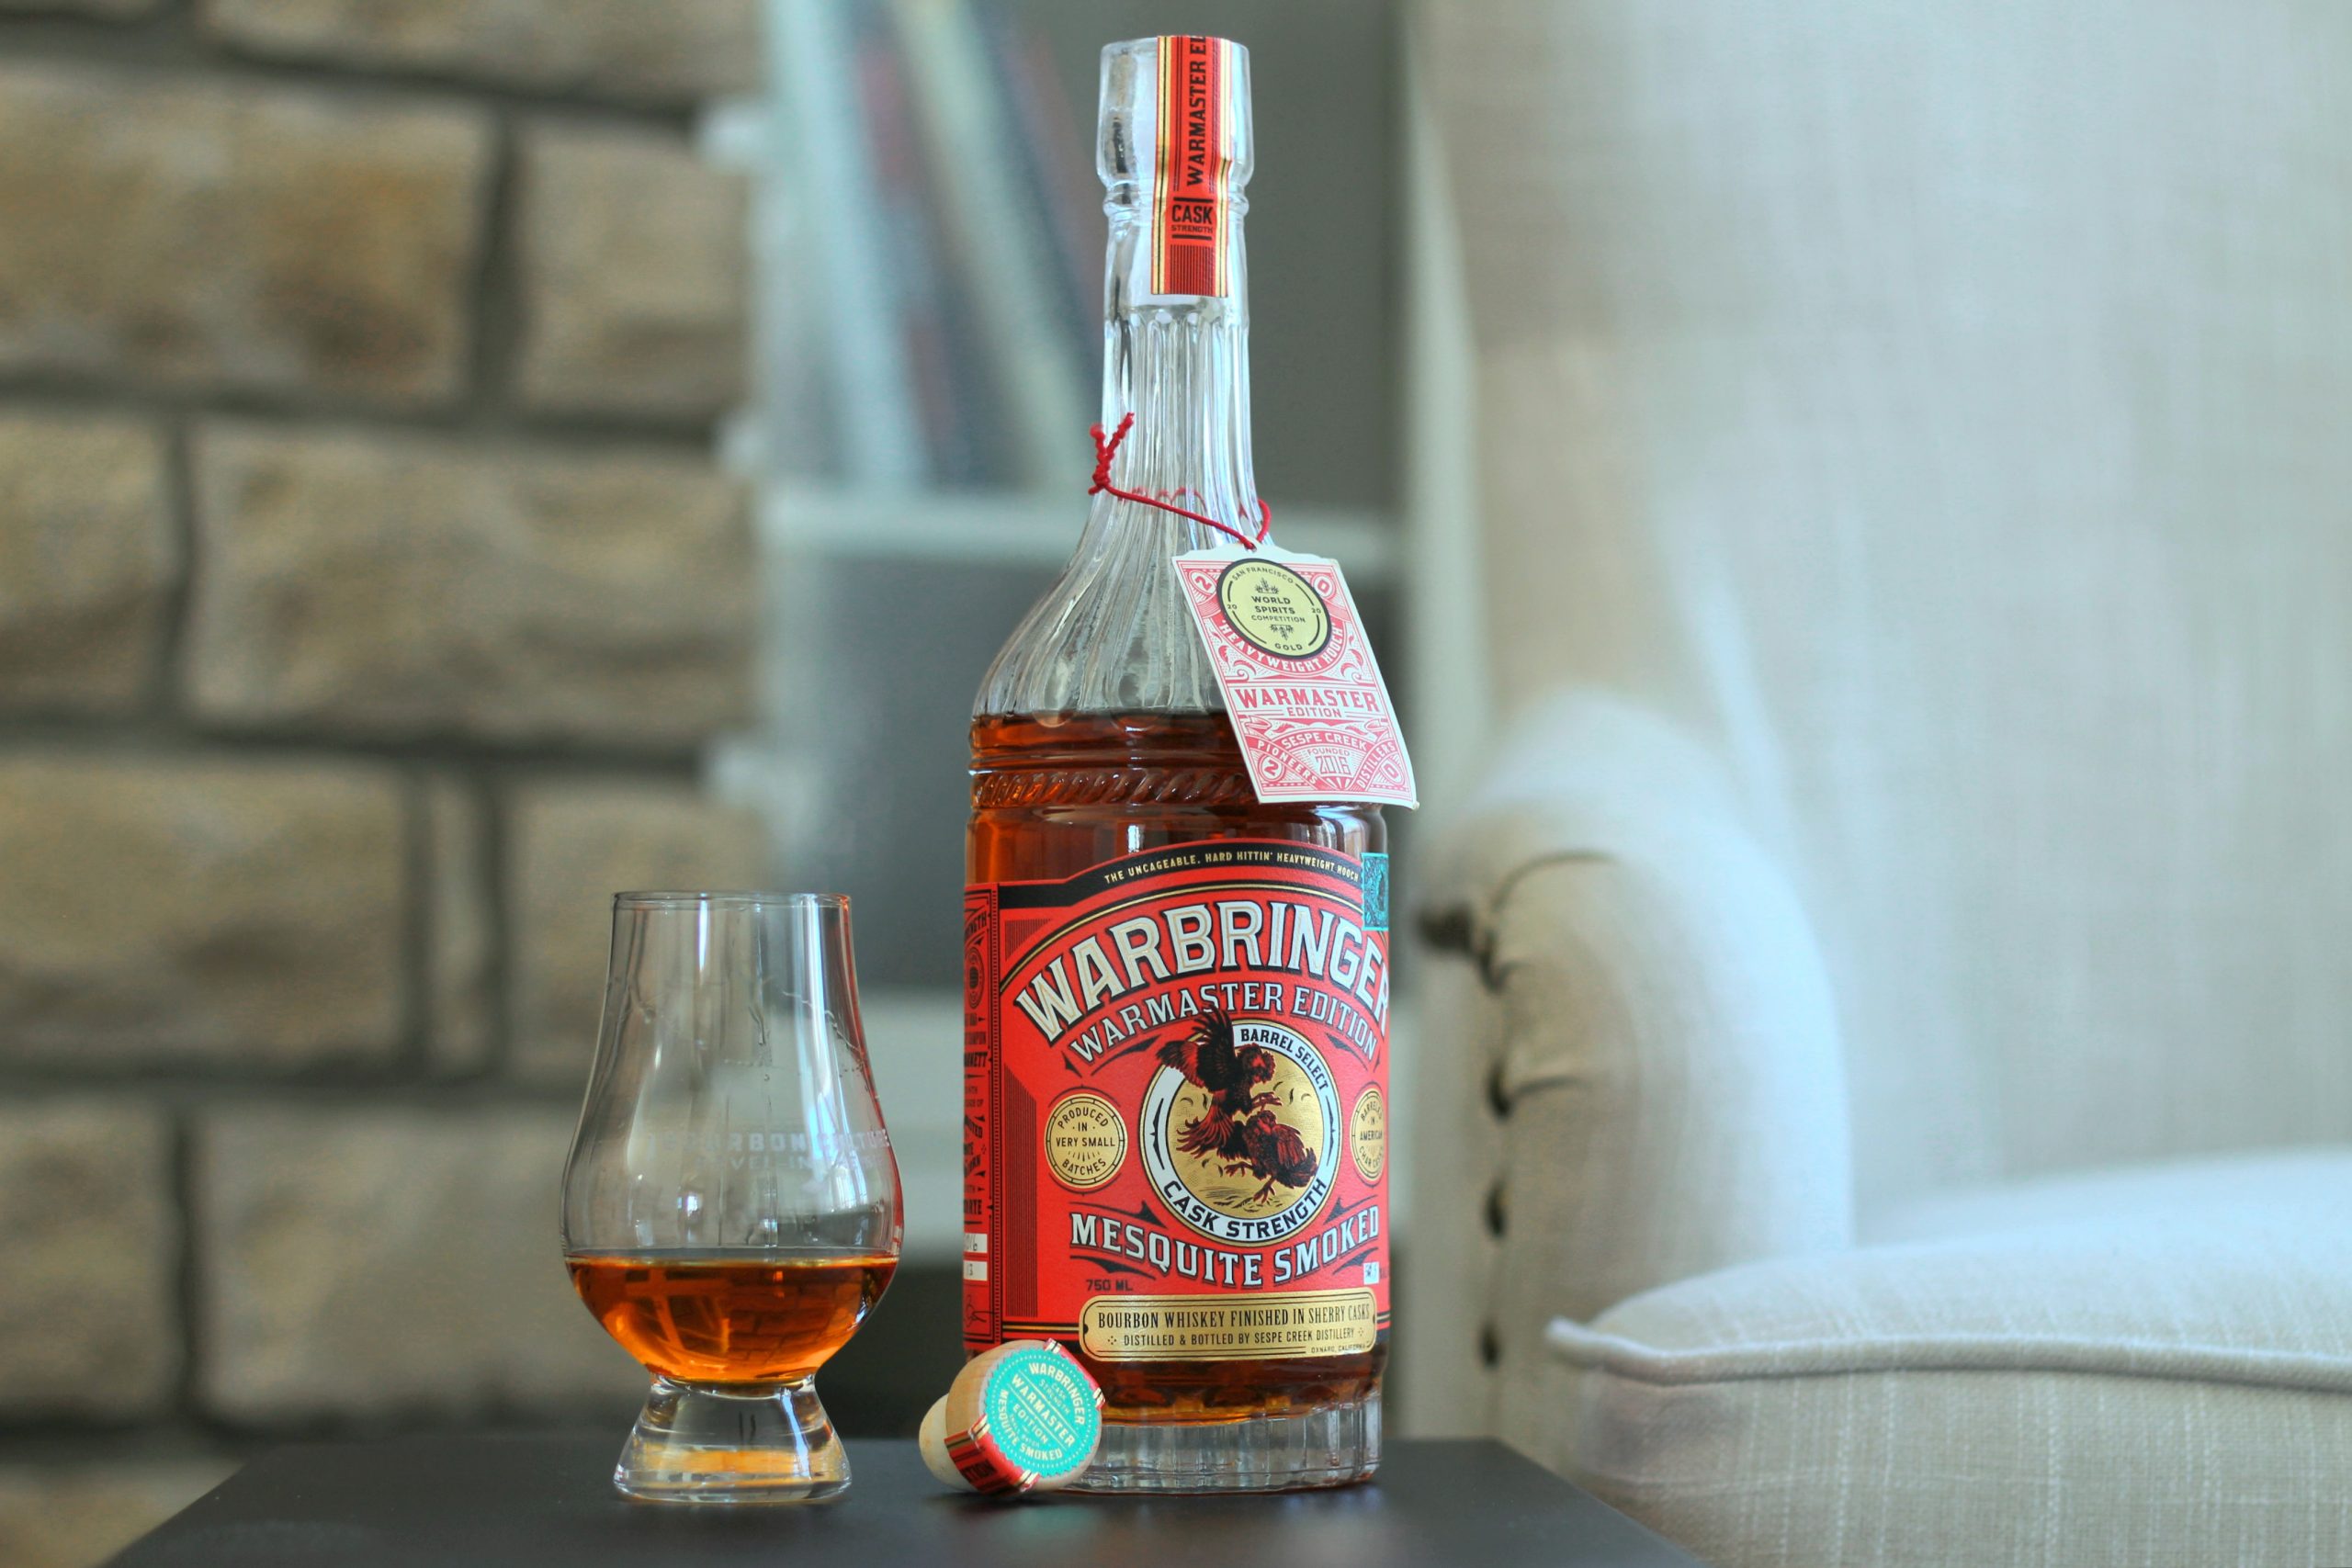 Warbringer Warmaster Edition Single Barrel Bourbon Review